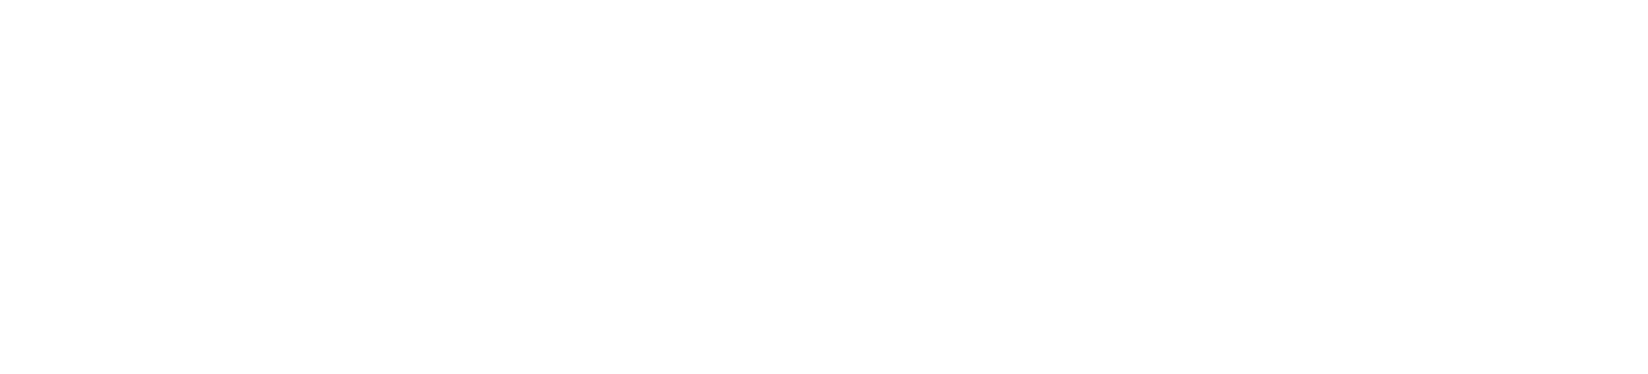 Heilpraktikerin Sabine Schwab – Naturheilpraxis in der Altstadt Spandau